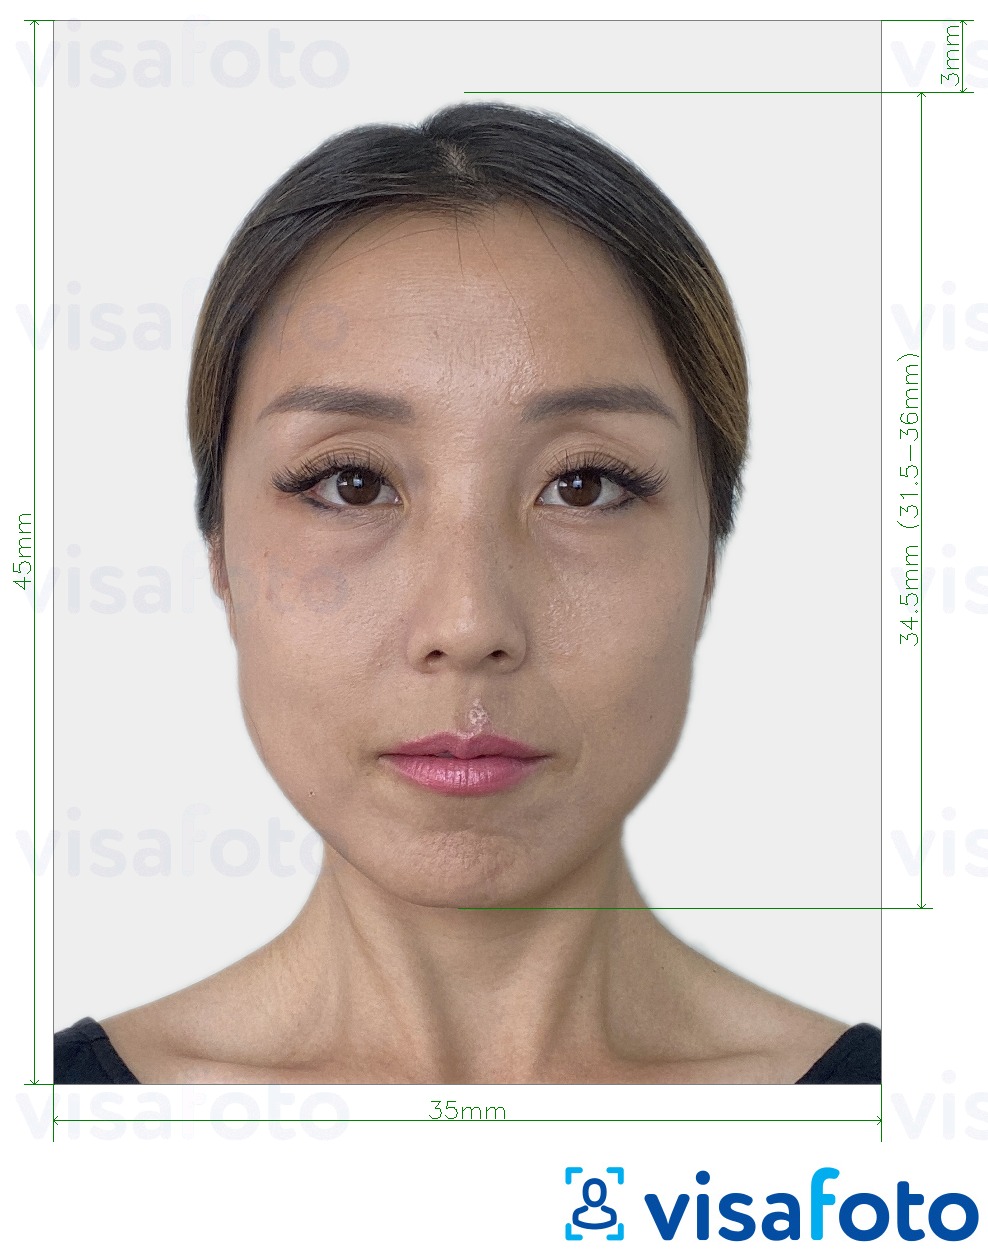 Ejemplo de foto para Visado Corea del Sur 35x45 mm (3.5x4.5 cm) con la especificación del tamaño exacto